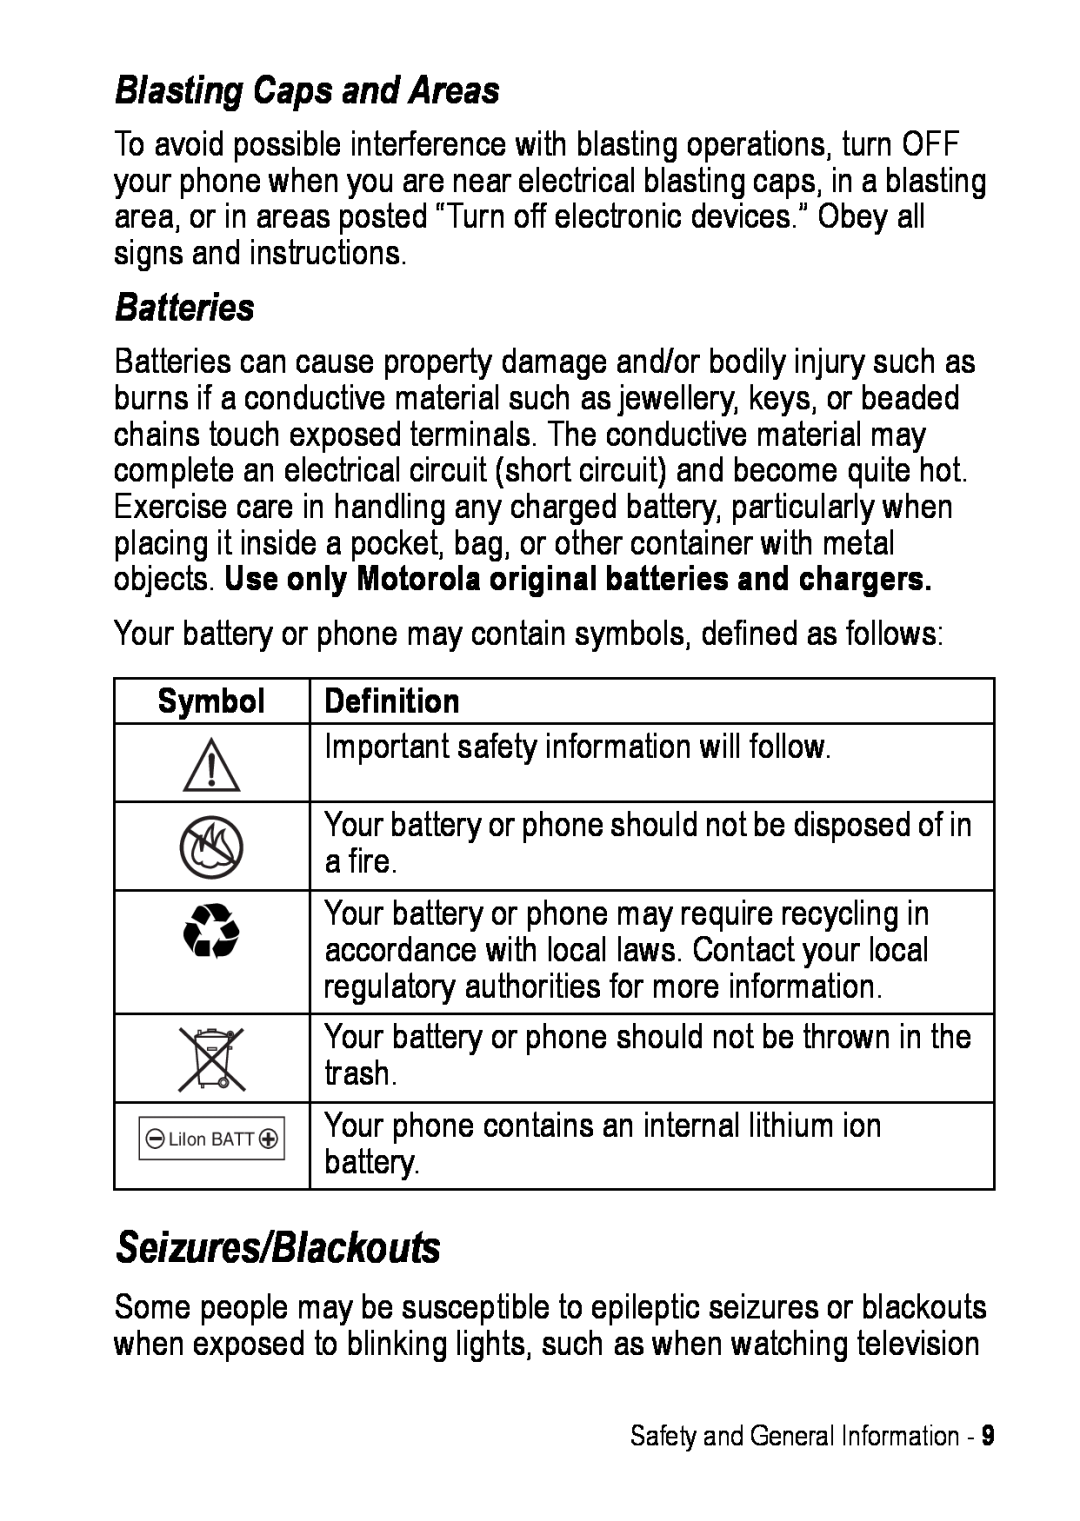 Motorola C390 manual Seizures/Blackouts, Blasting Caps and Areas, Batteries 